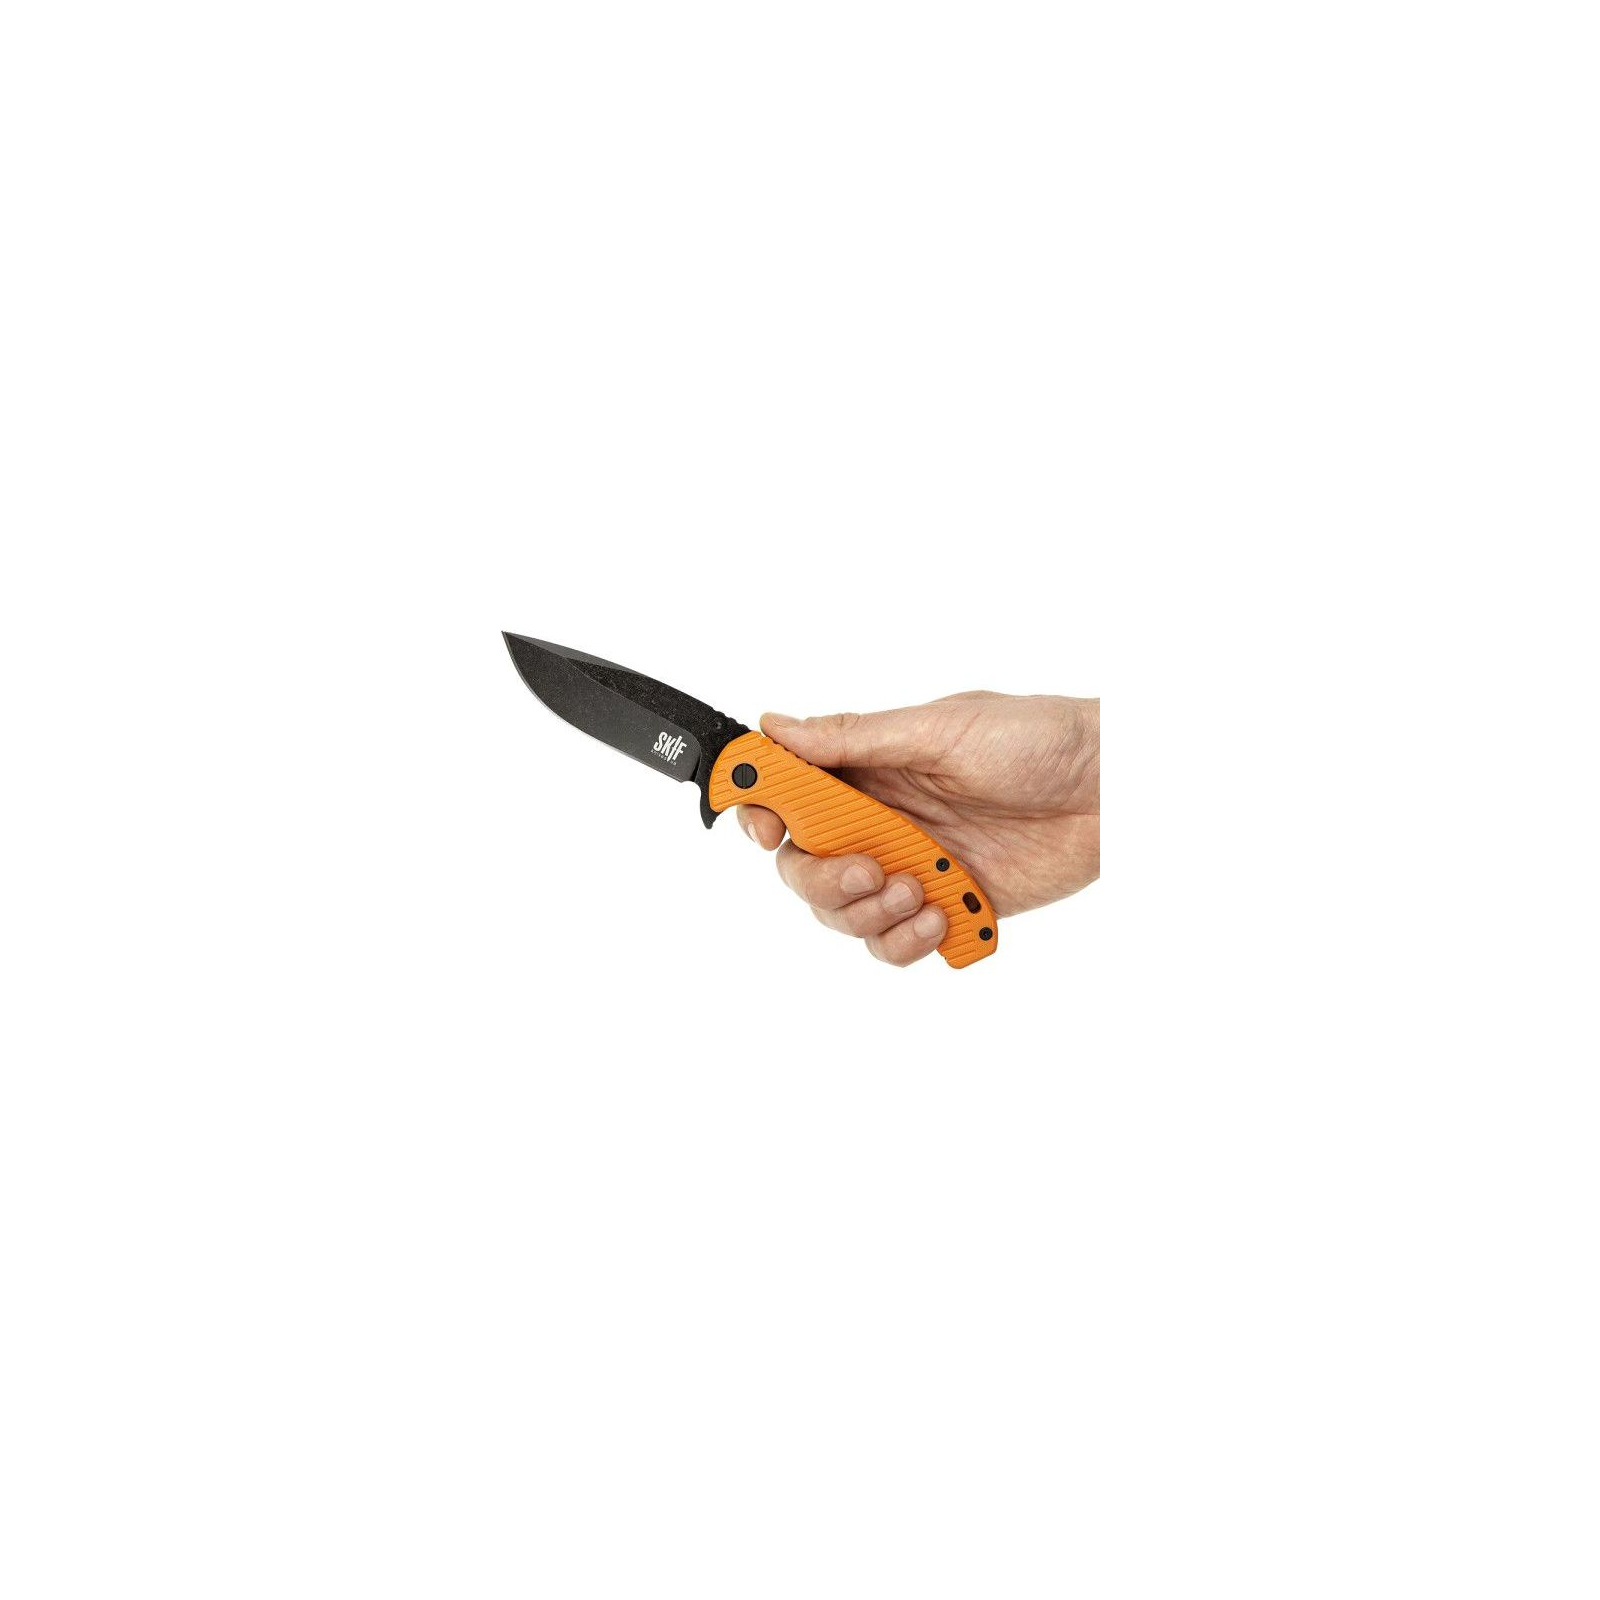 Нож Skif Sturdy II BSW Olive (420SEBG) изображение 5